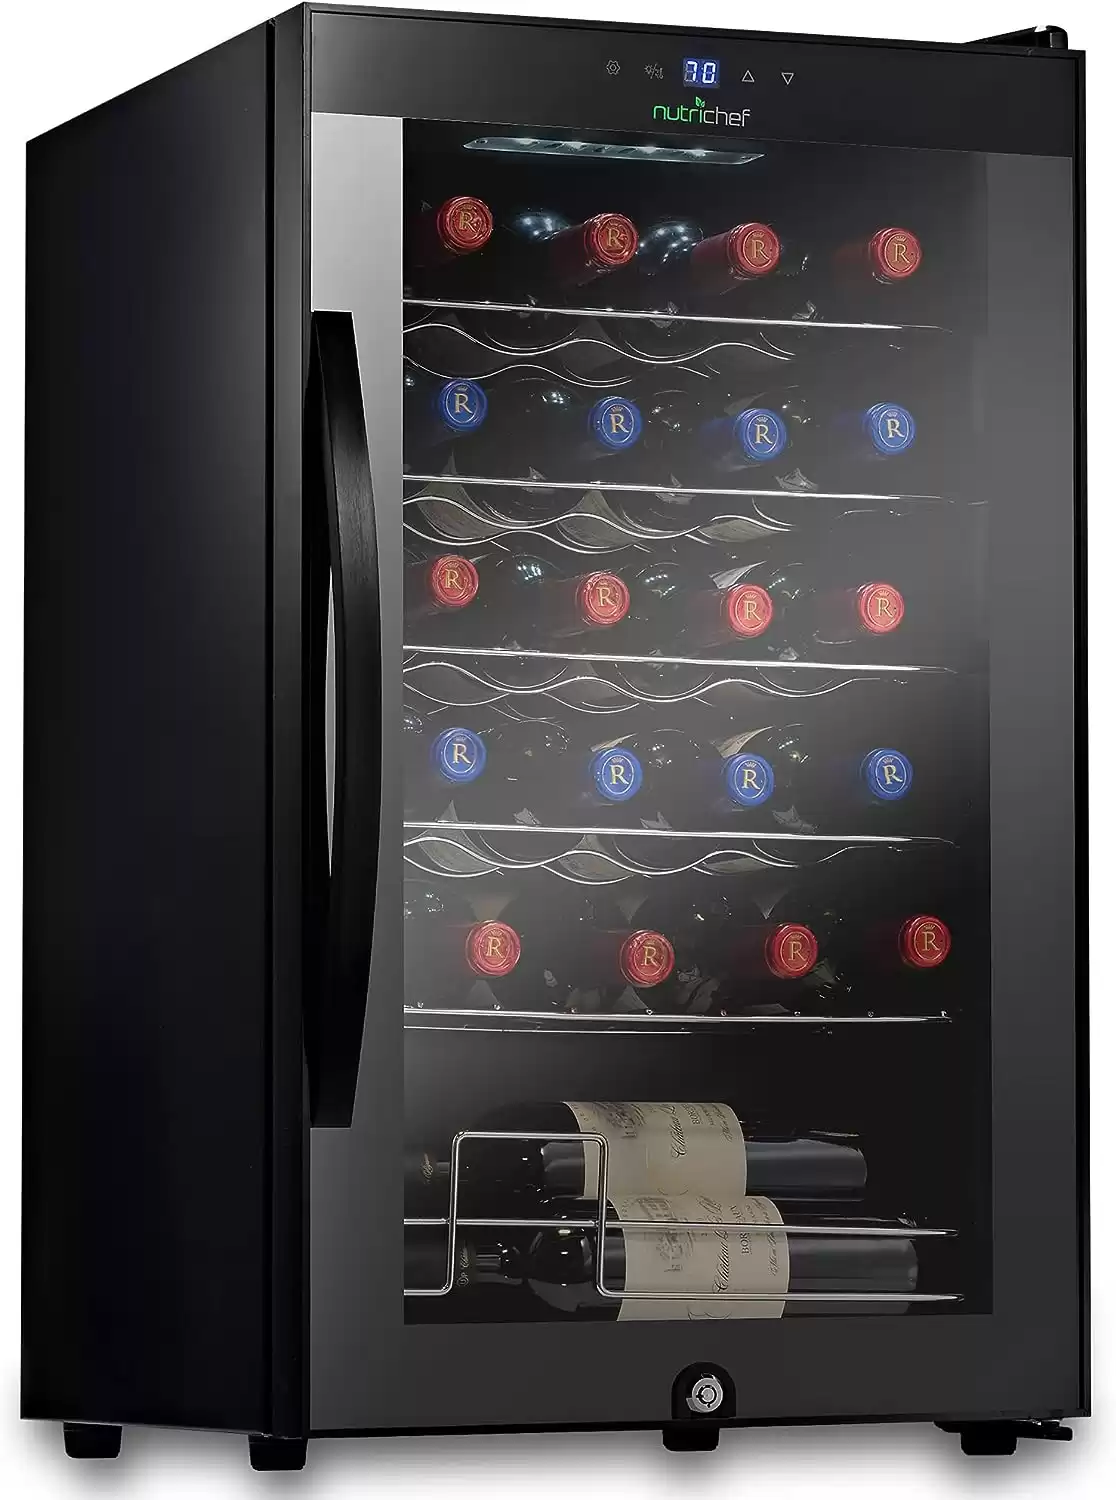 NutriChef 24 Bottle Compressor Wine Cooler Refrigerator Cooling System | Large Freestanding Wine Cellar Fridge with Black Glass Door